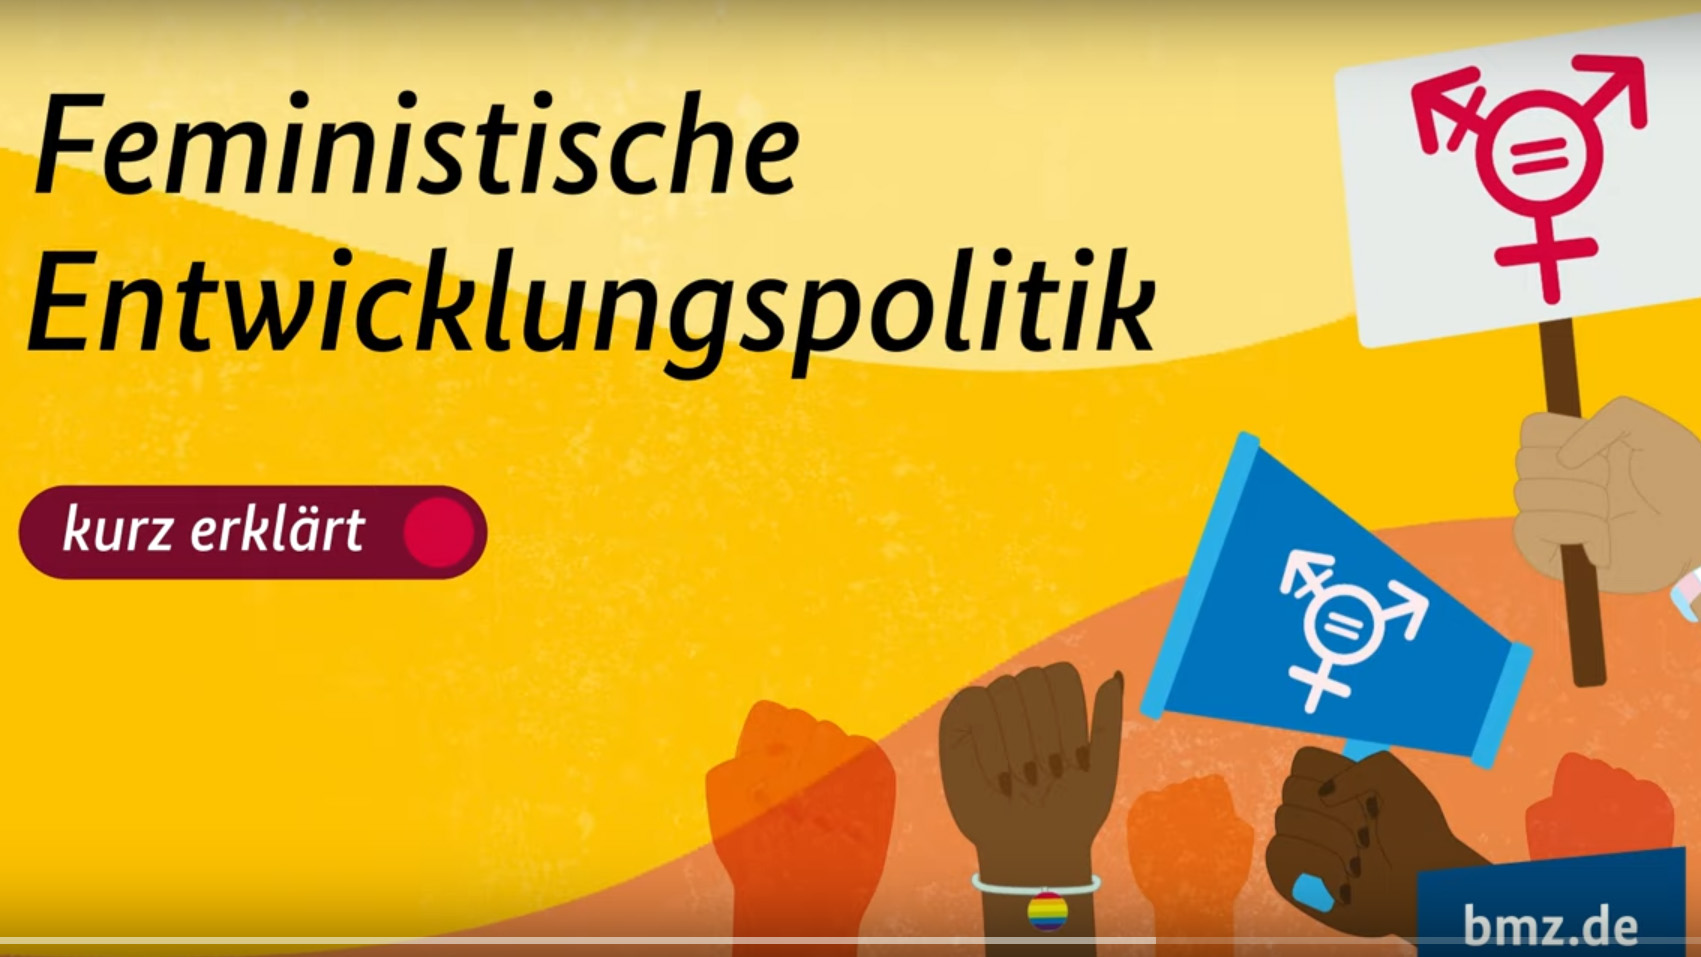 Standbild aus dem Video "Feministische Entwicklungspolitik kurz erklärt"